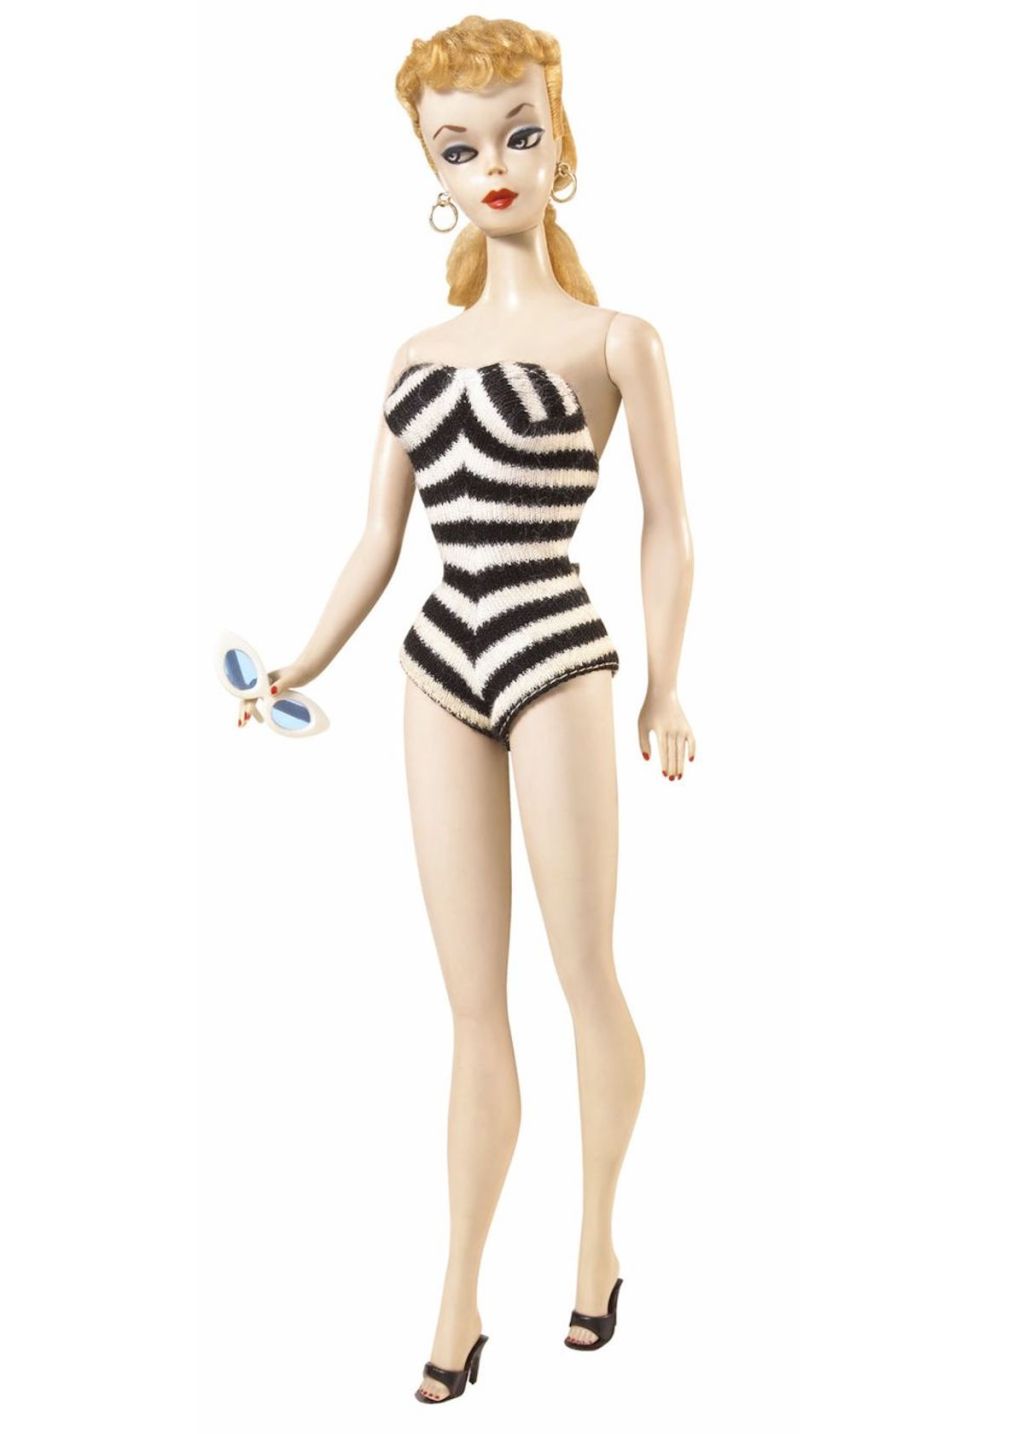 original 1959 barbie doll